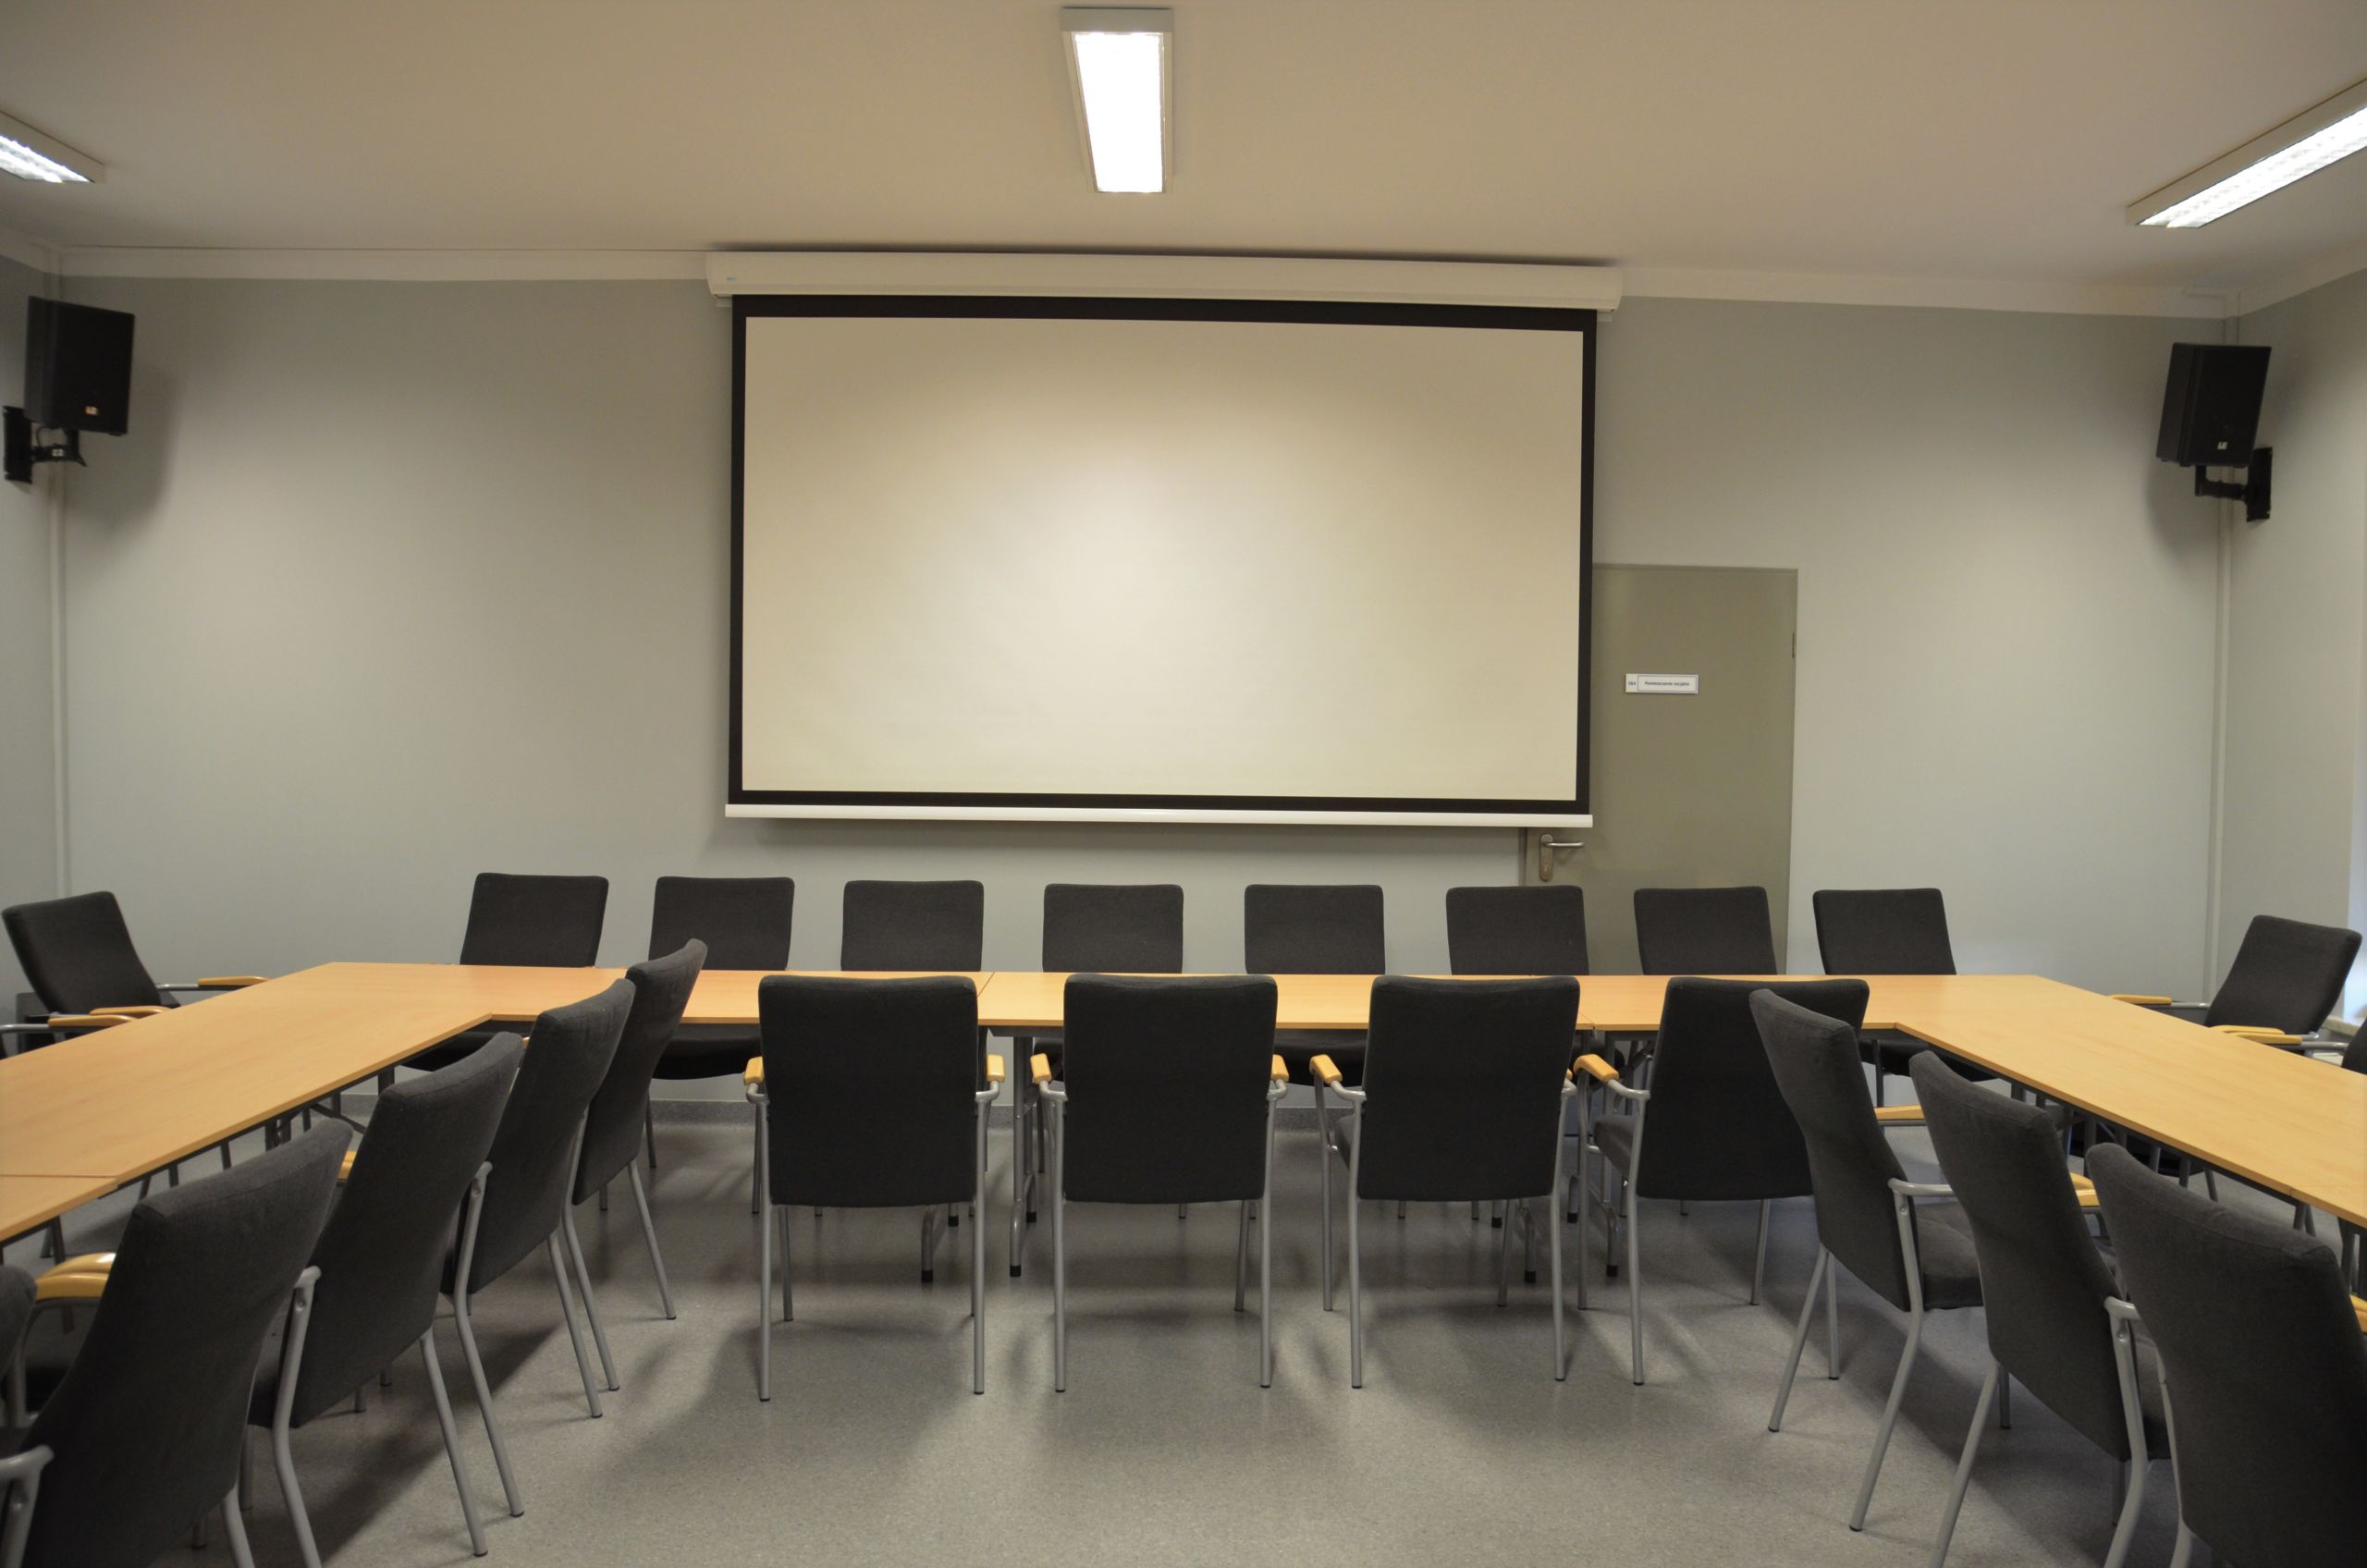 Zdjęcie przedstawiające salę konferencyjną. Przedstawia stoły ułożone w kształt litery C. Po obu stronach stołu poustawiane są krzesła. Na ścianie znajduje się ekran do rzutnika, a w rogach sali znajdują się głośniki.